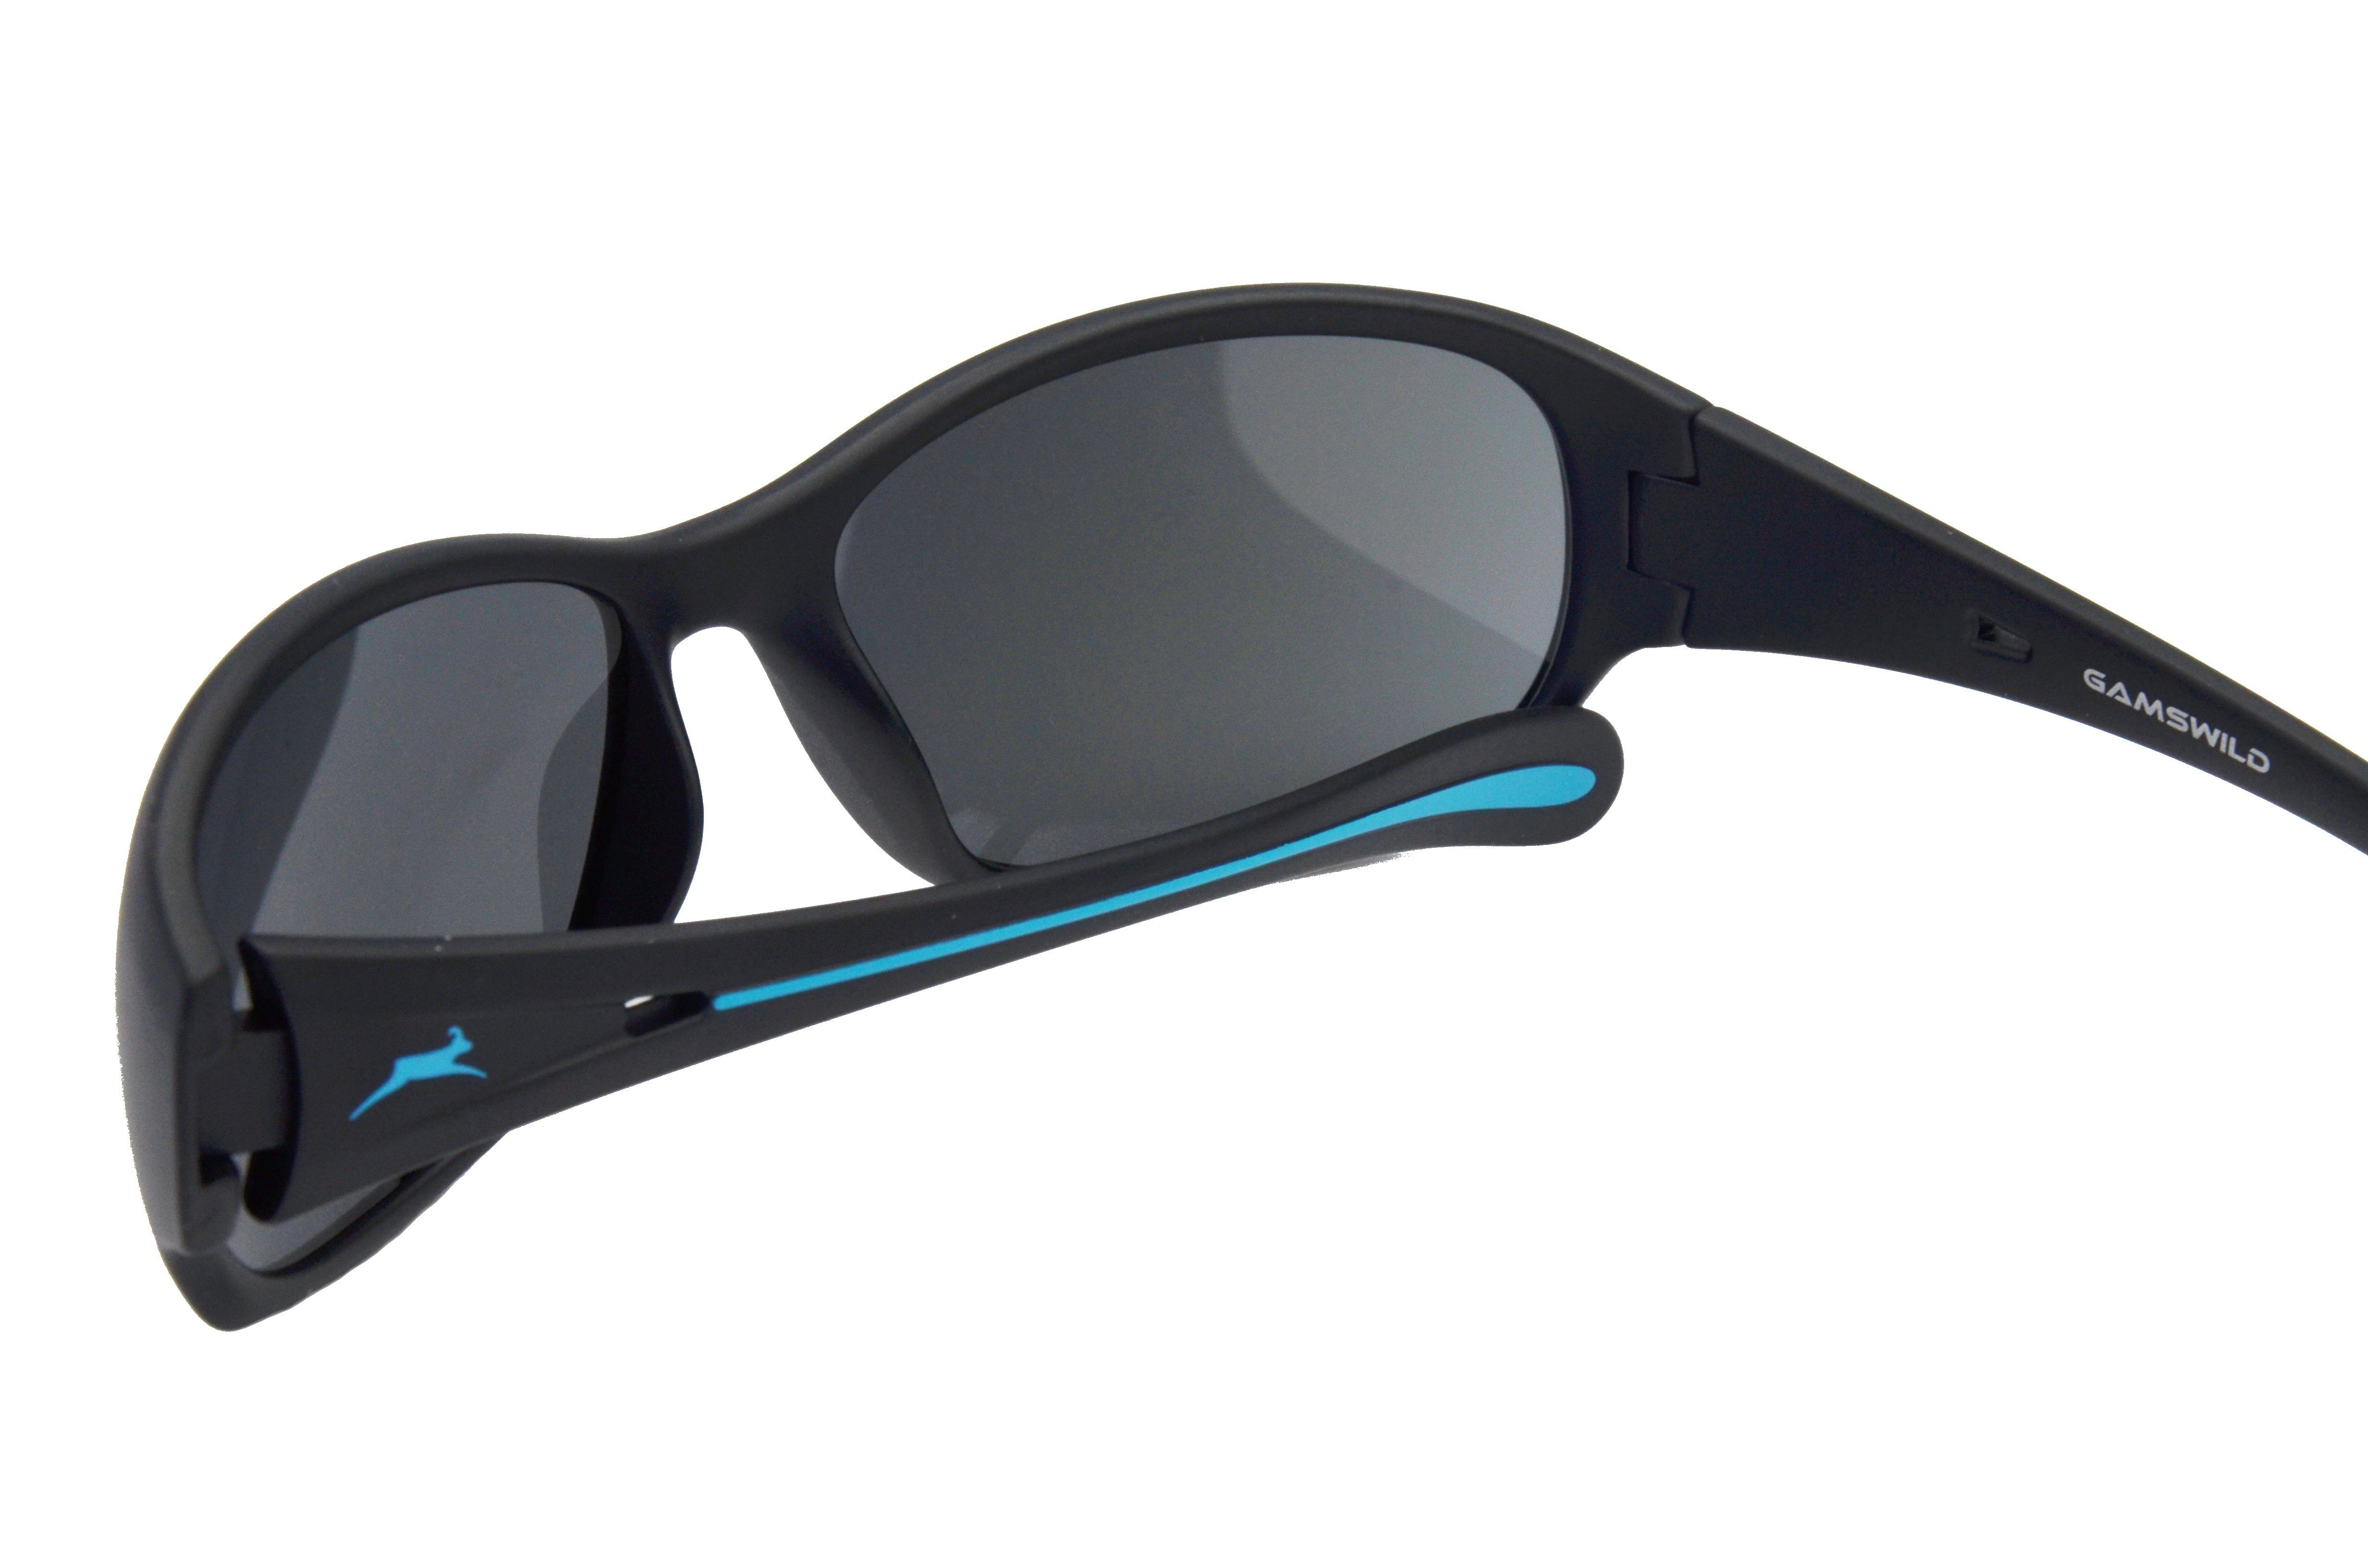 schwarz-pink, schwarz-blau Sportbrille Sonnenbrille Skibrille Damenbrille Damenmodell braun-grün, schmal Fahrradbrille, WS2424 geschnittenes Gamswild